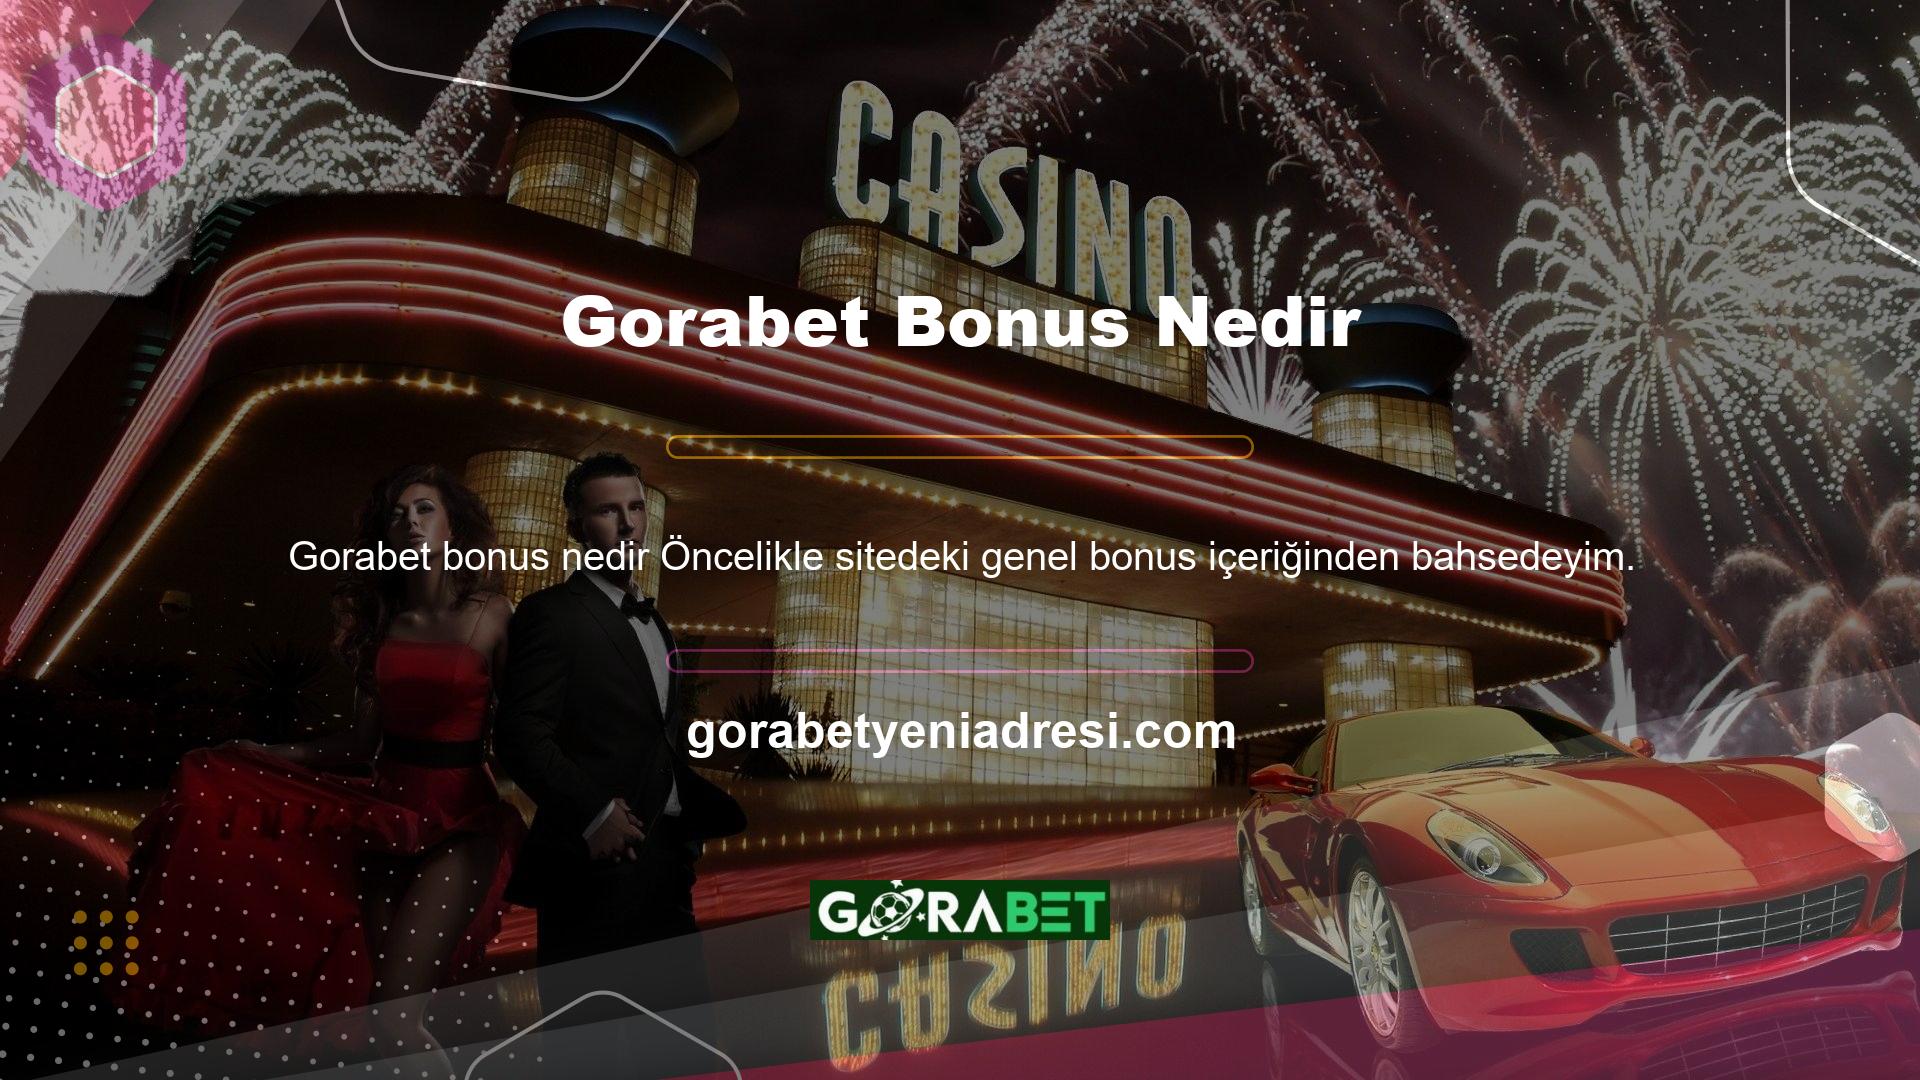 Bonus, Gorabet kullanıcılarına ve potansiyel kullanıcılarına sunduğu bir fırsattır